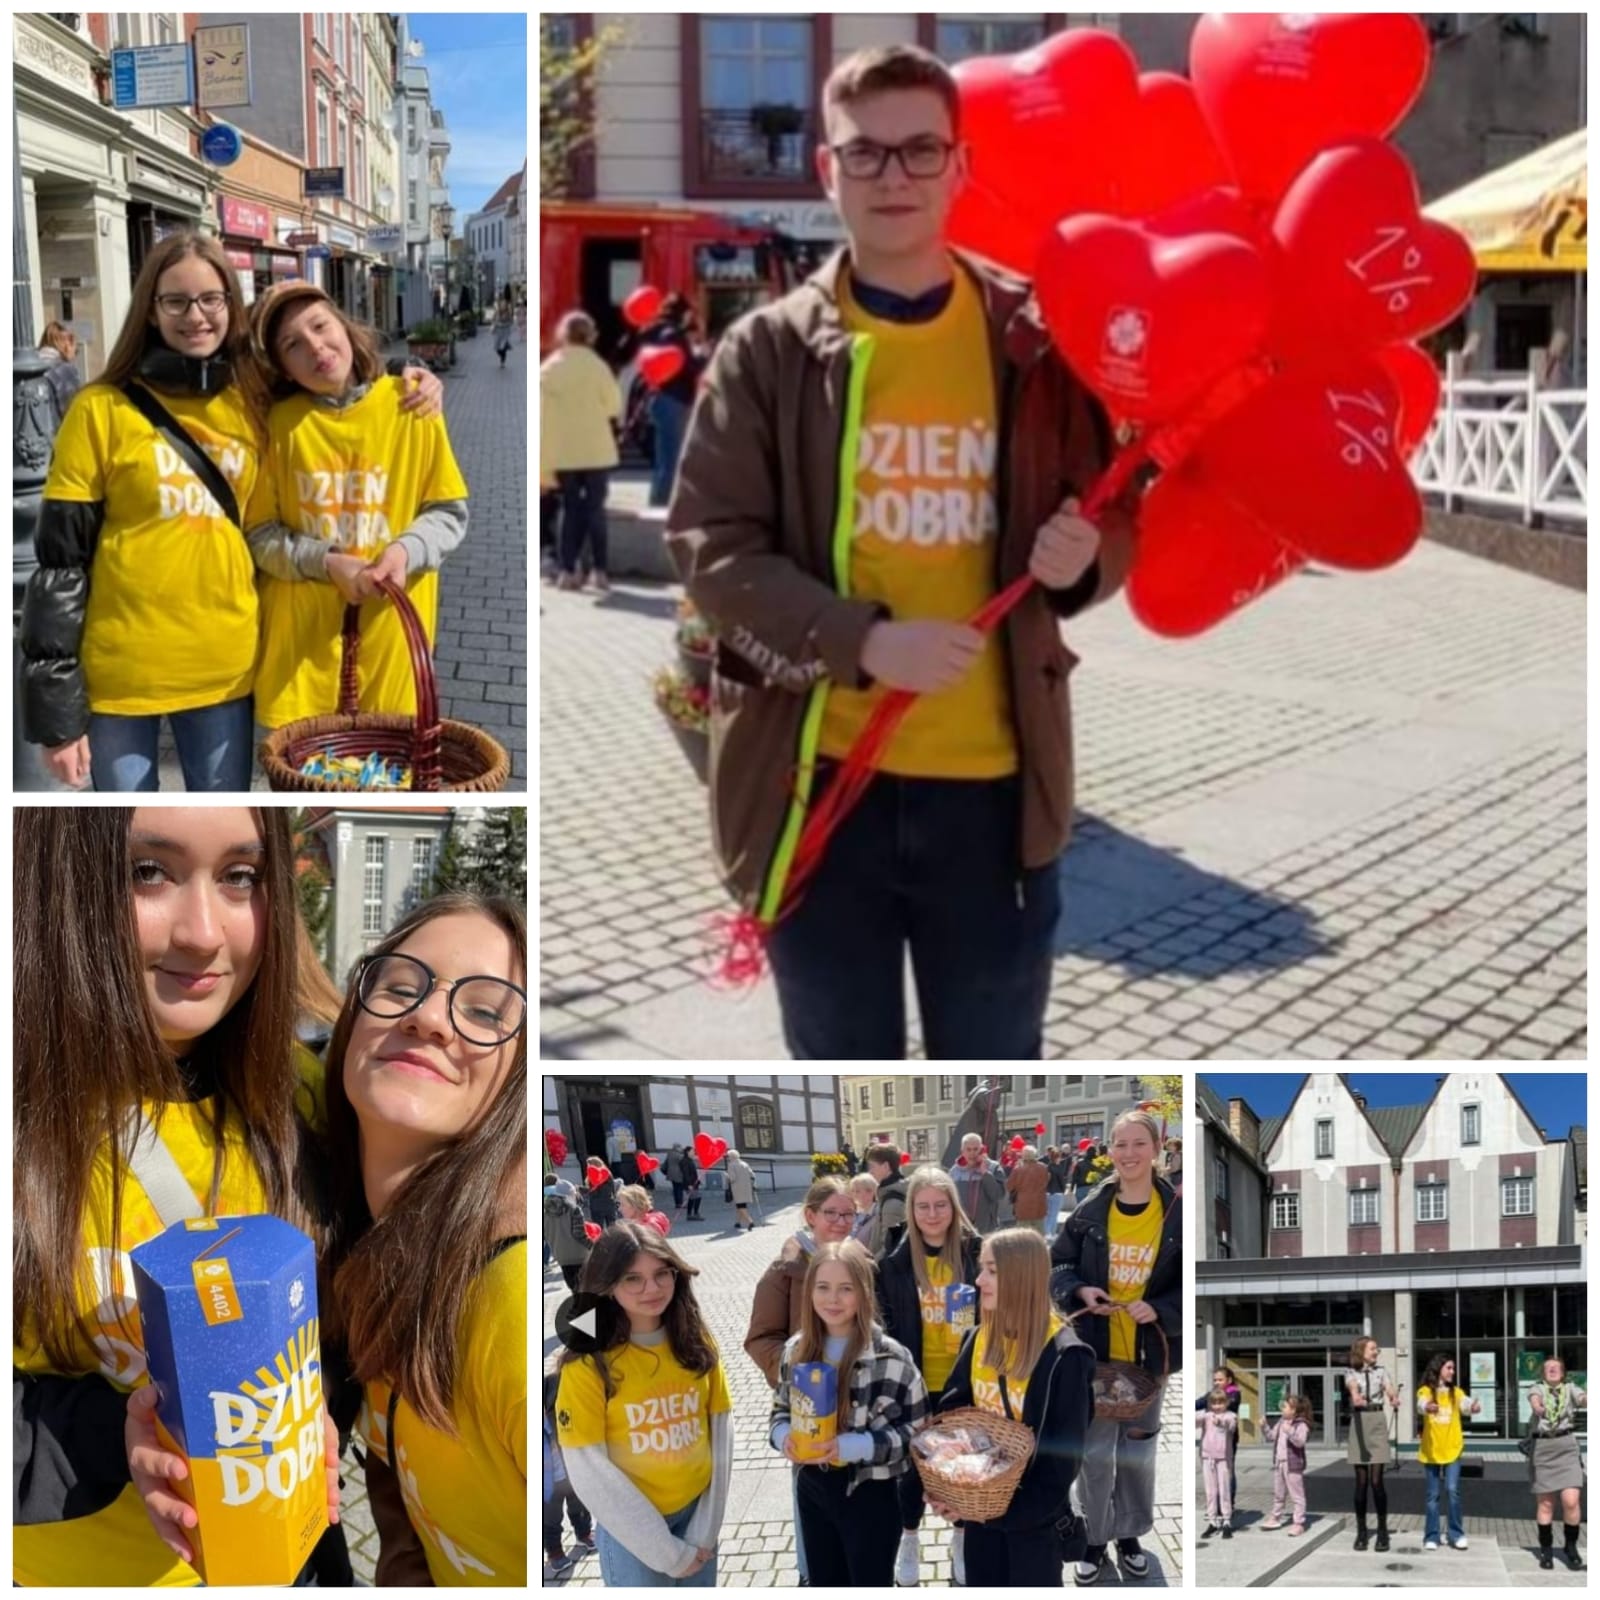 Wolontariusze prowadzą zbiórkę na rzecz uchodźców z Ukrainy. Ubrani w żółte koszulki z napisem Dzień Dobra, w rękach trzymają czerwone balony